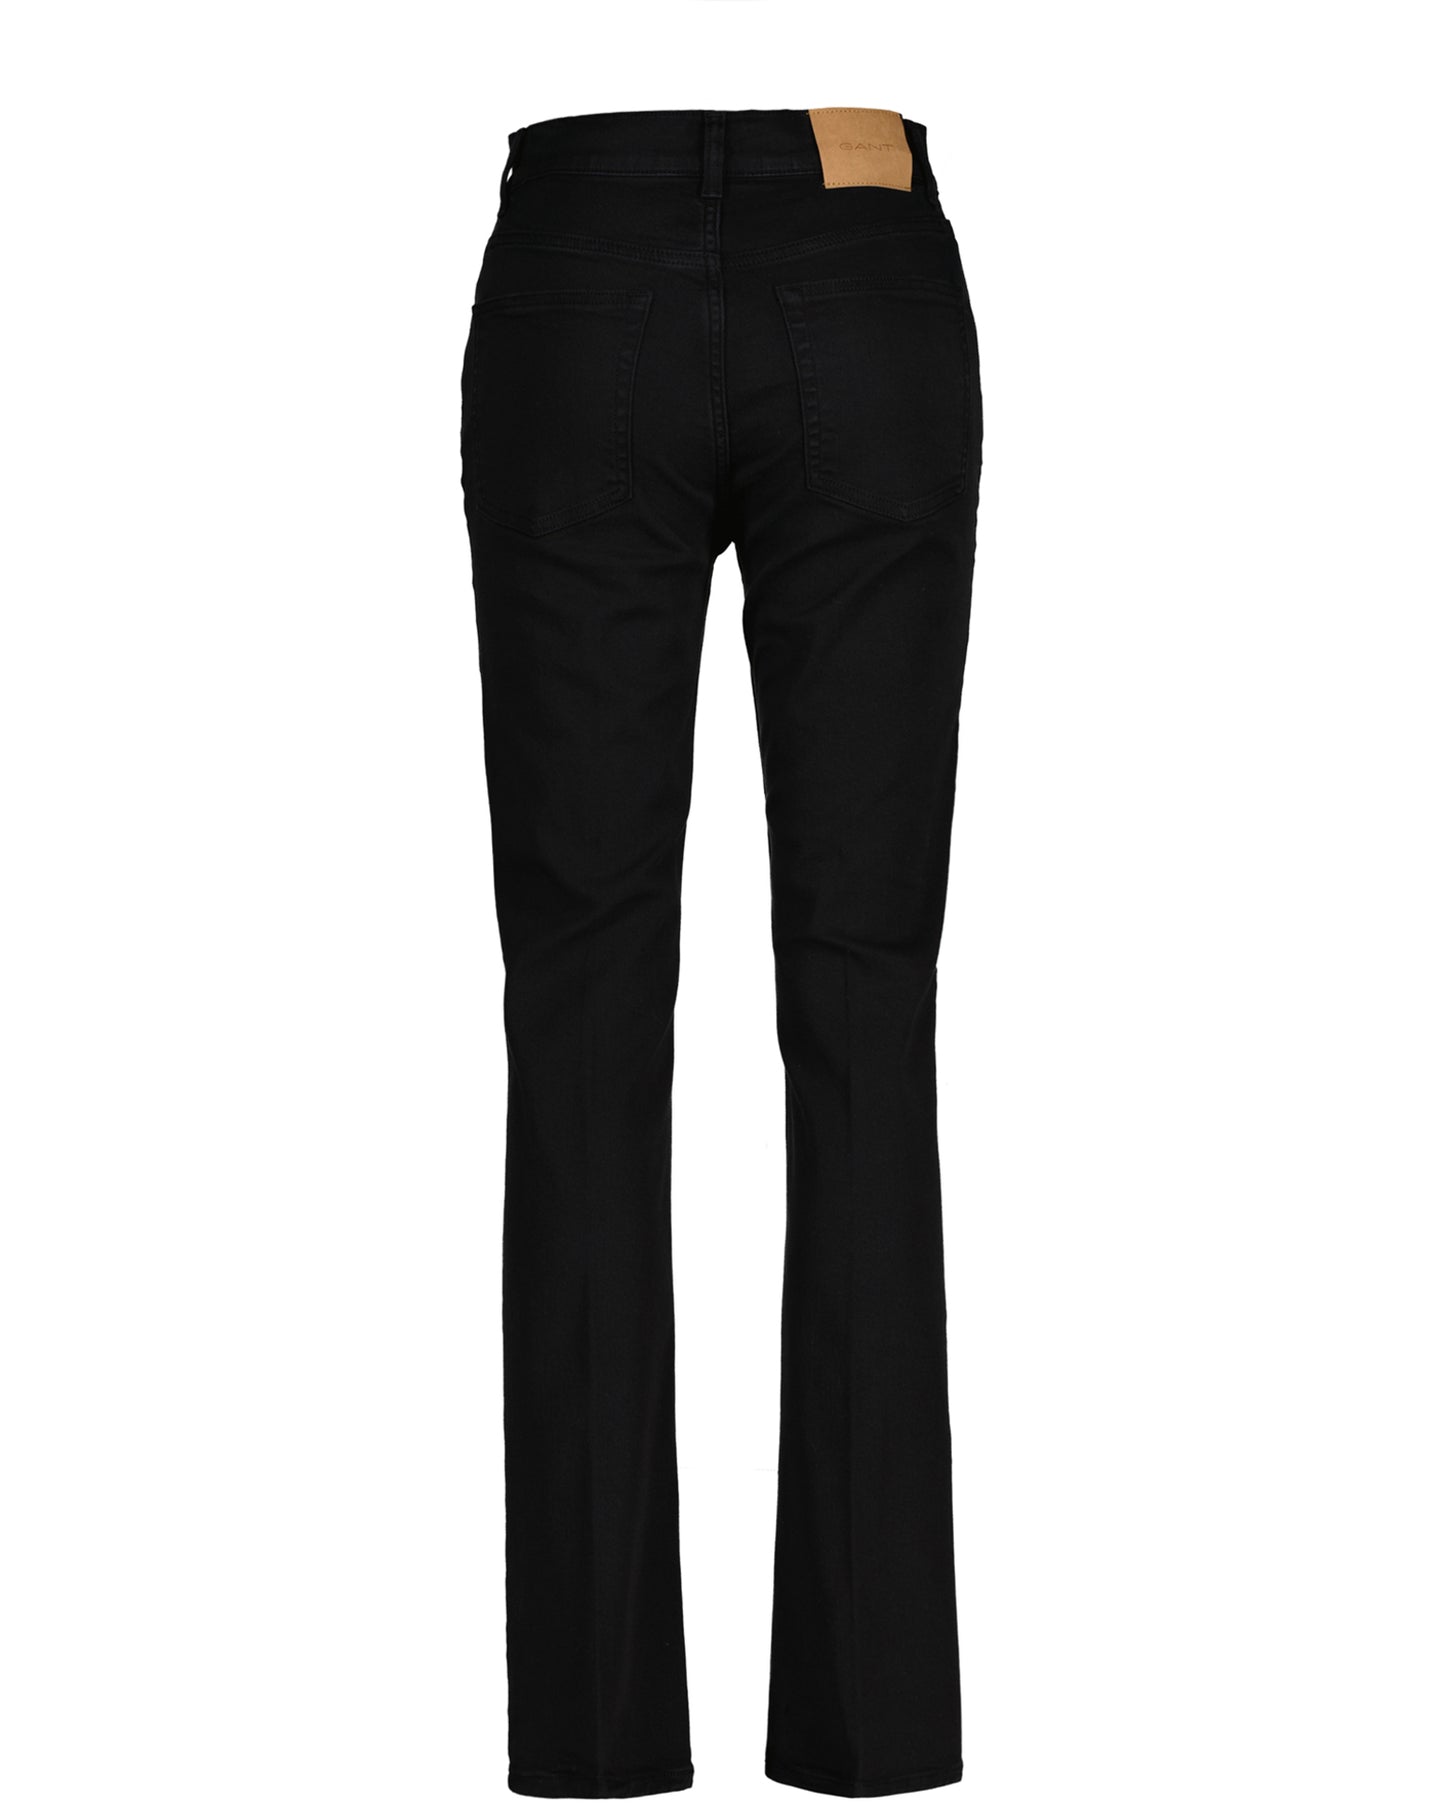 Flare Colour Jeans - Ebony Black